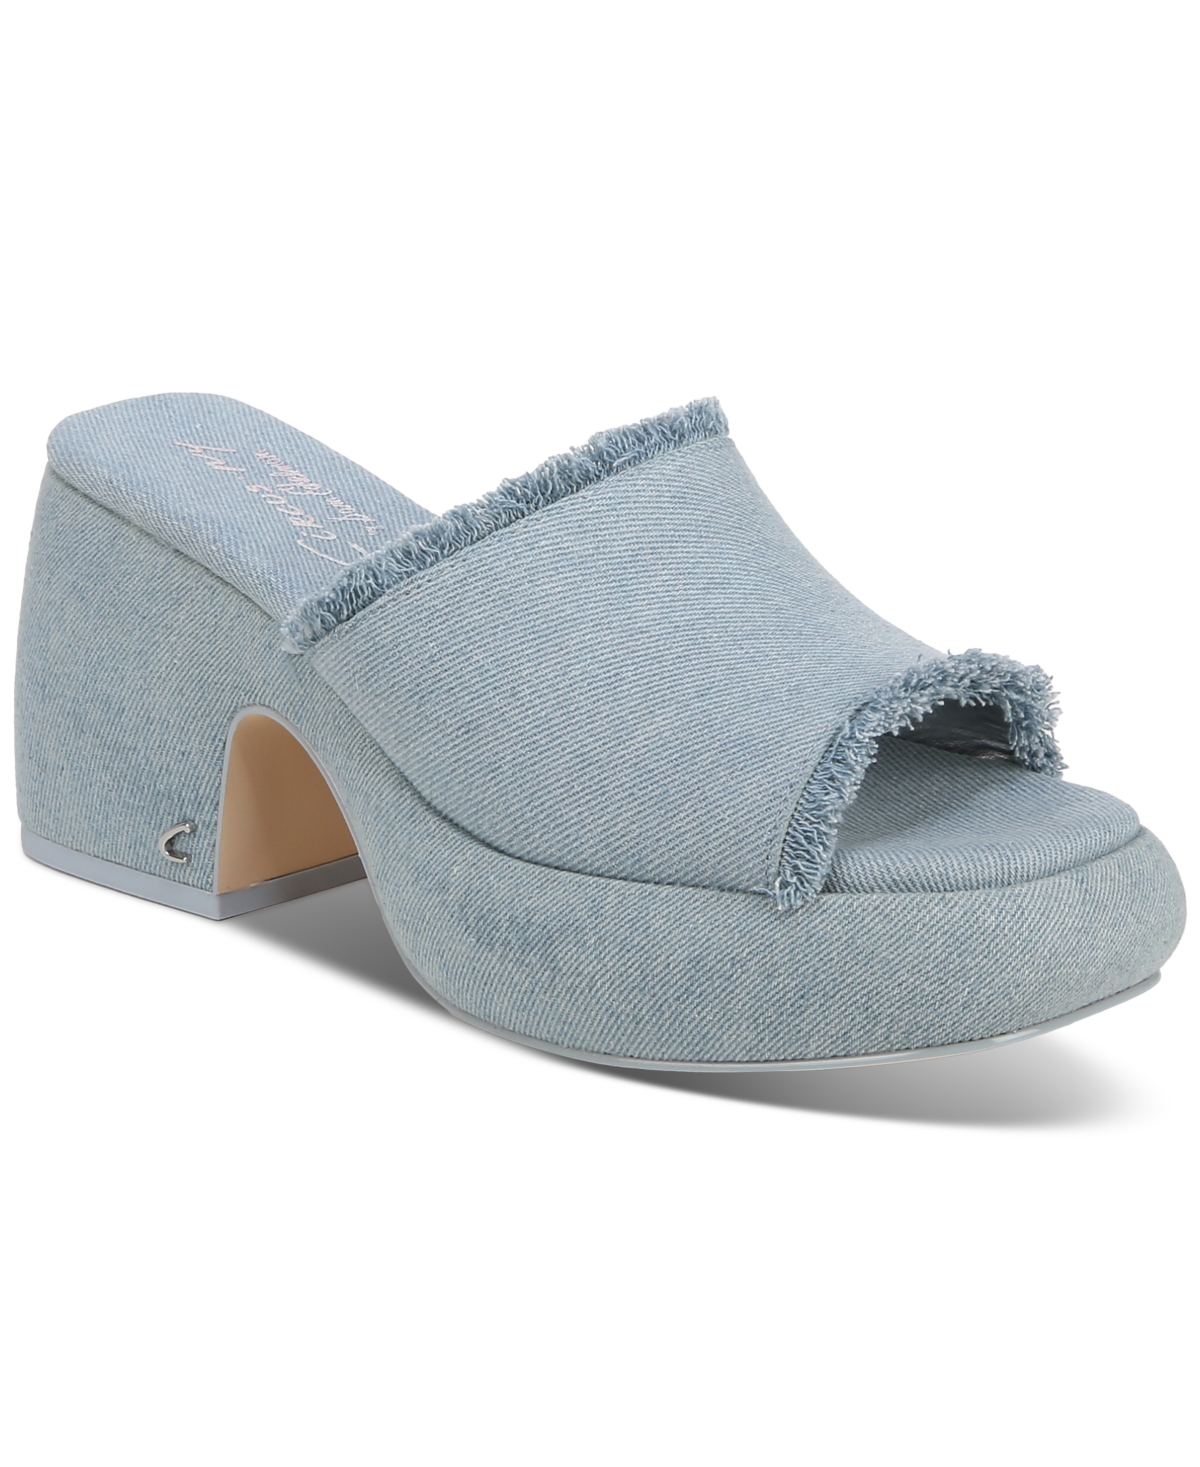 Women's Isla Fringe Platform Dress Sandals - Washed Glacial Blue Denim